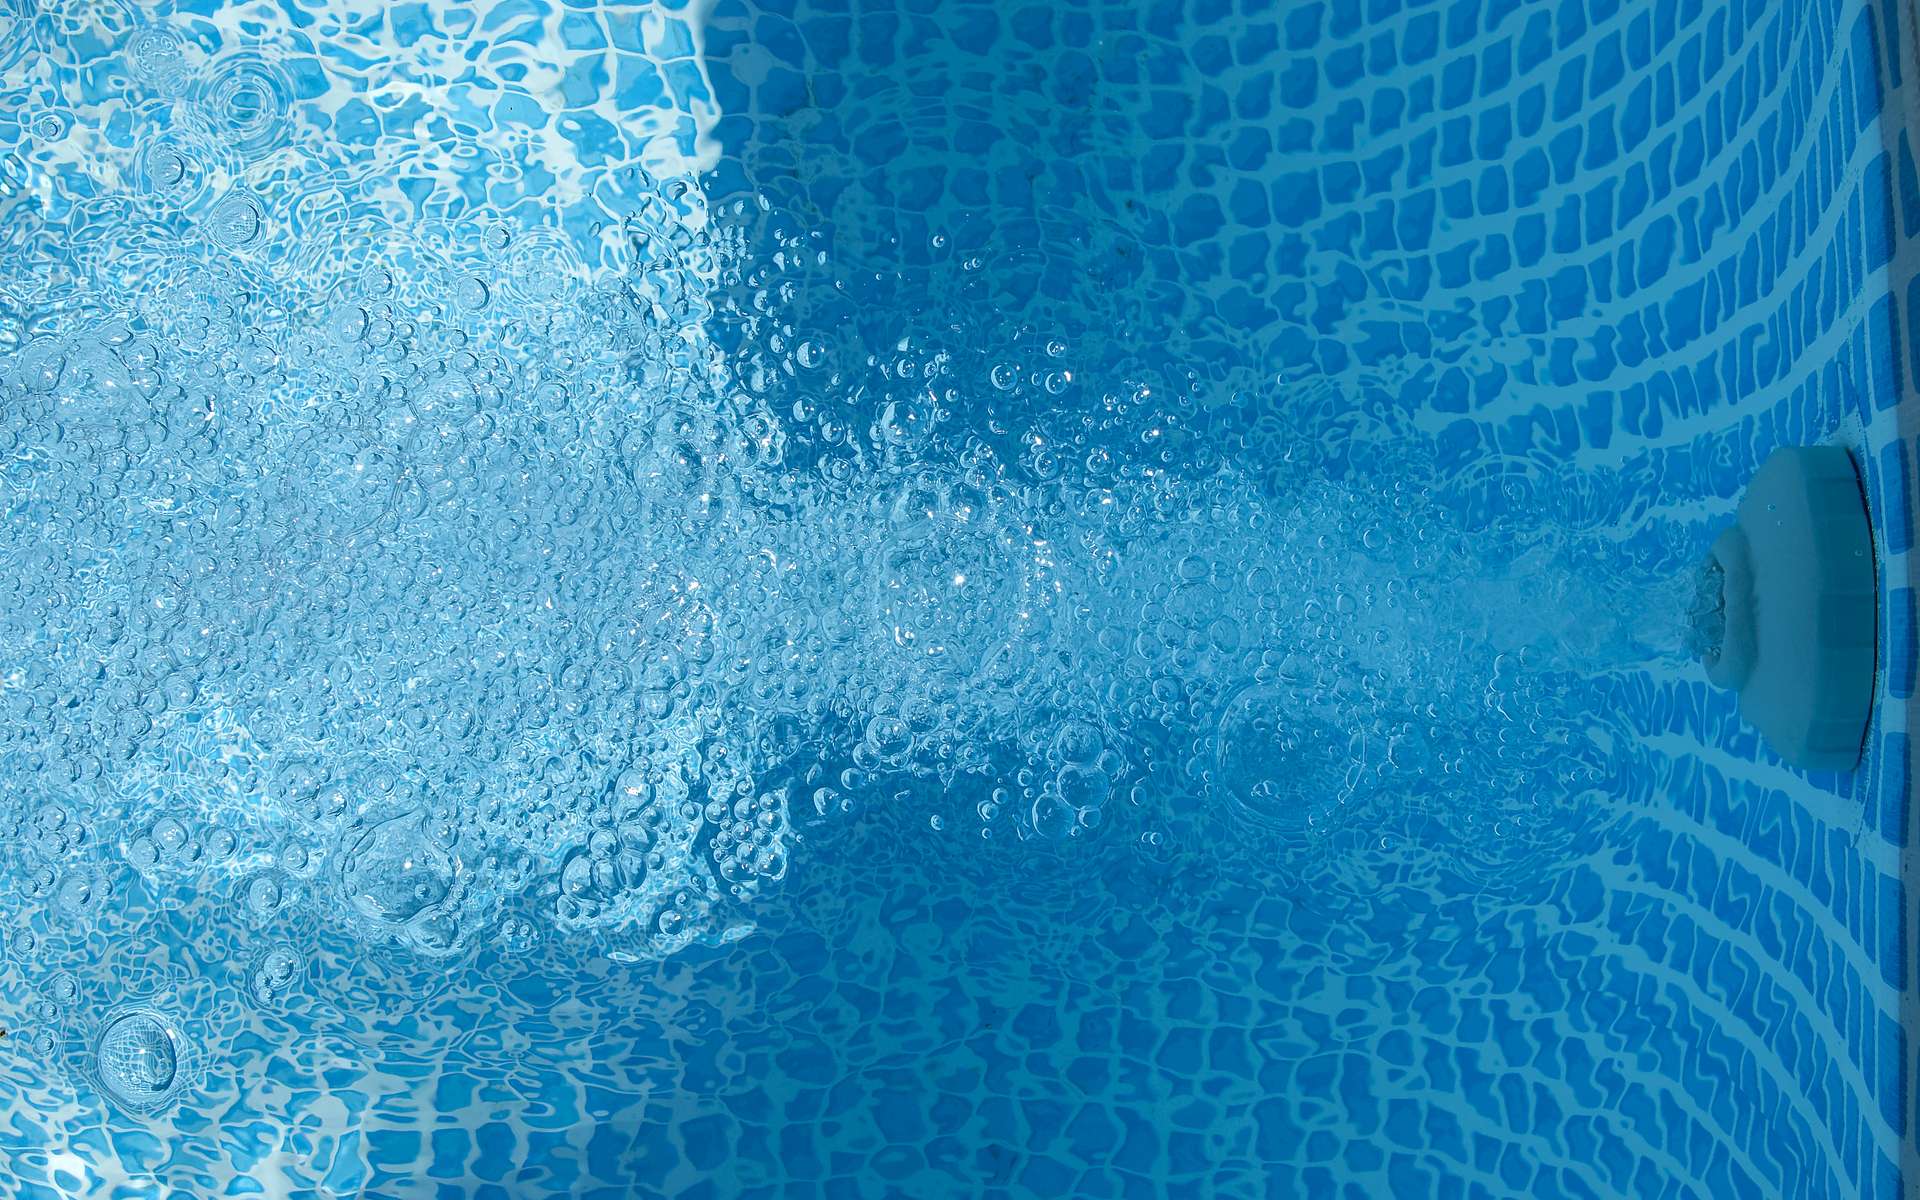 Les différents systèmes et méthodes pour effectuer la filtration d’une piscine offrent une large gamme d’efficacité comme de niveau d’entretien. © kama17, Flickr, cc by nc 2.0